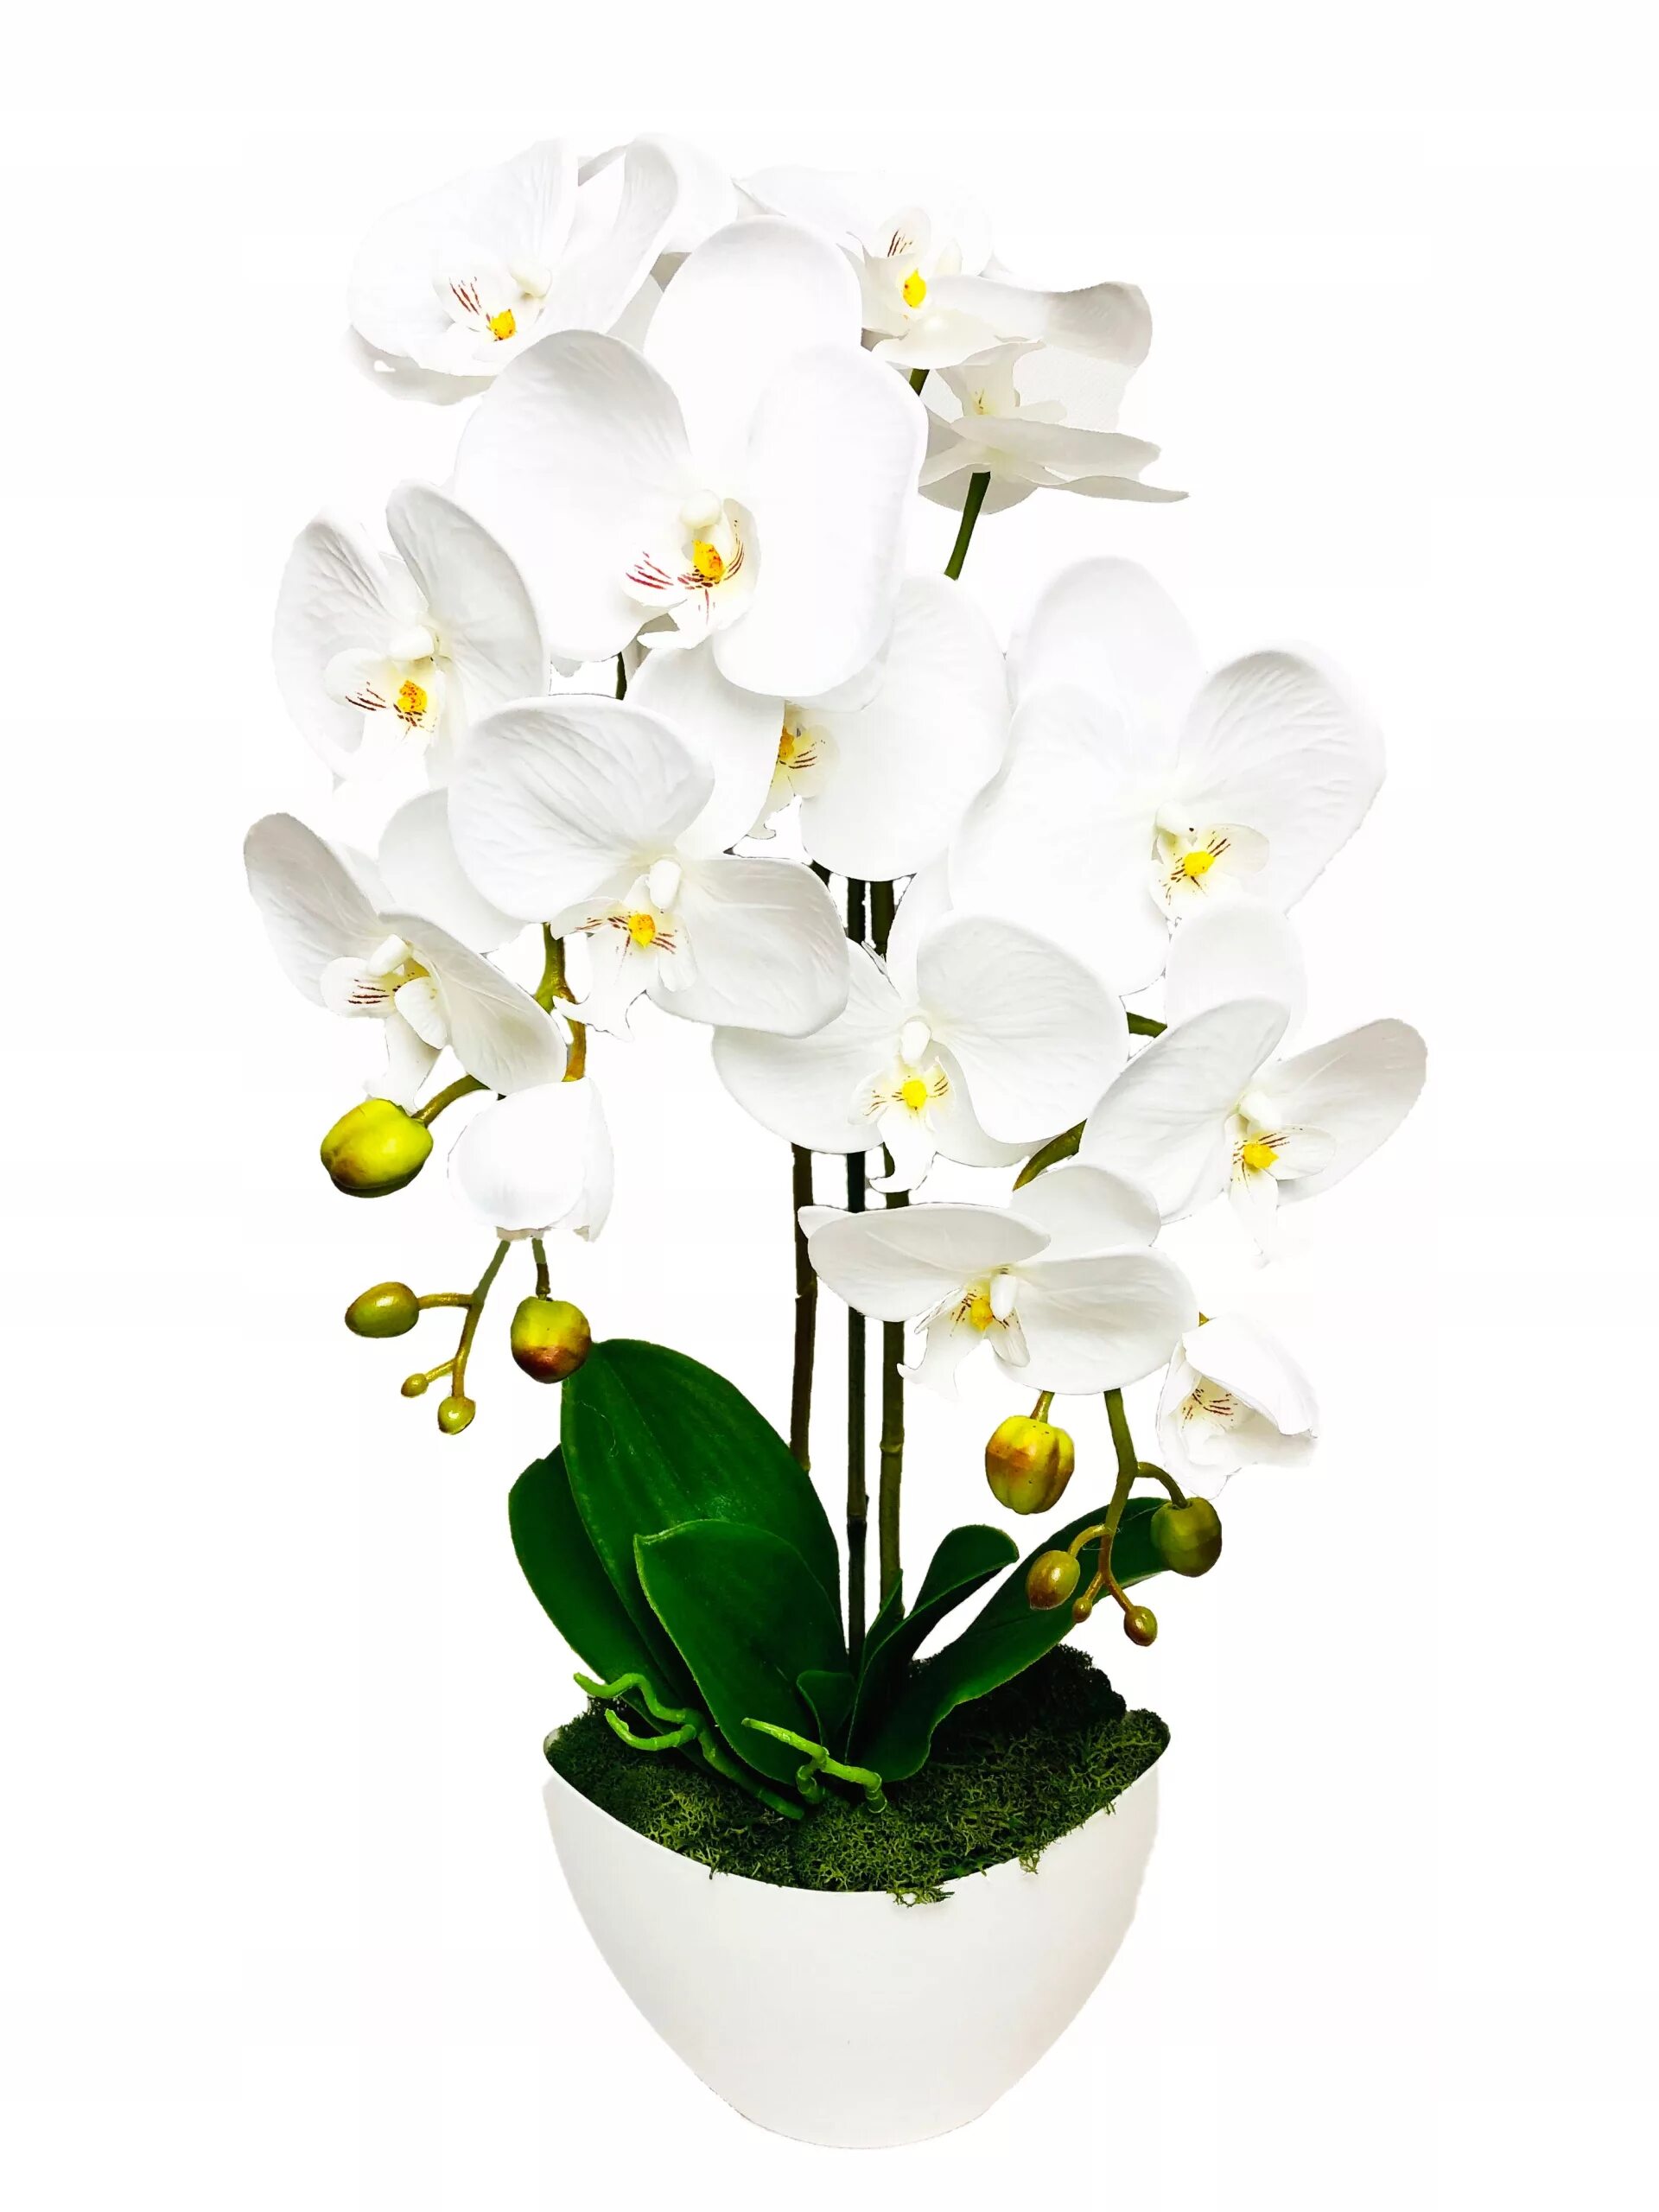 Купить орхидею в горшке в интернете. Искусственная Орхидея в горшке. Белая Орхидея в горшке. Белые орхидеи искусственные в горшках. Орхидея белая искусственная.